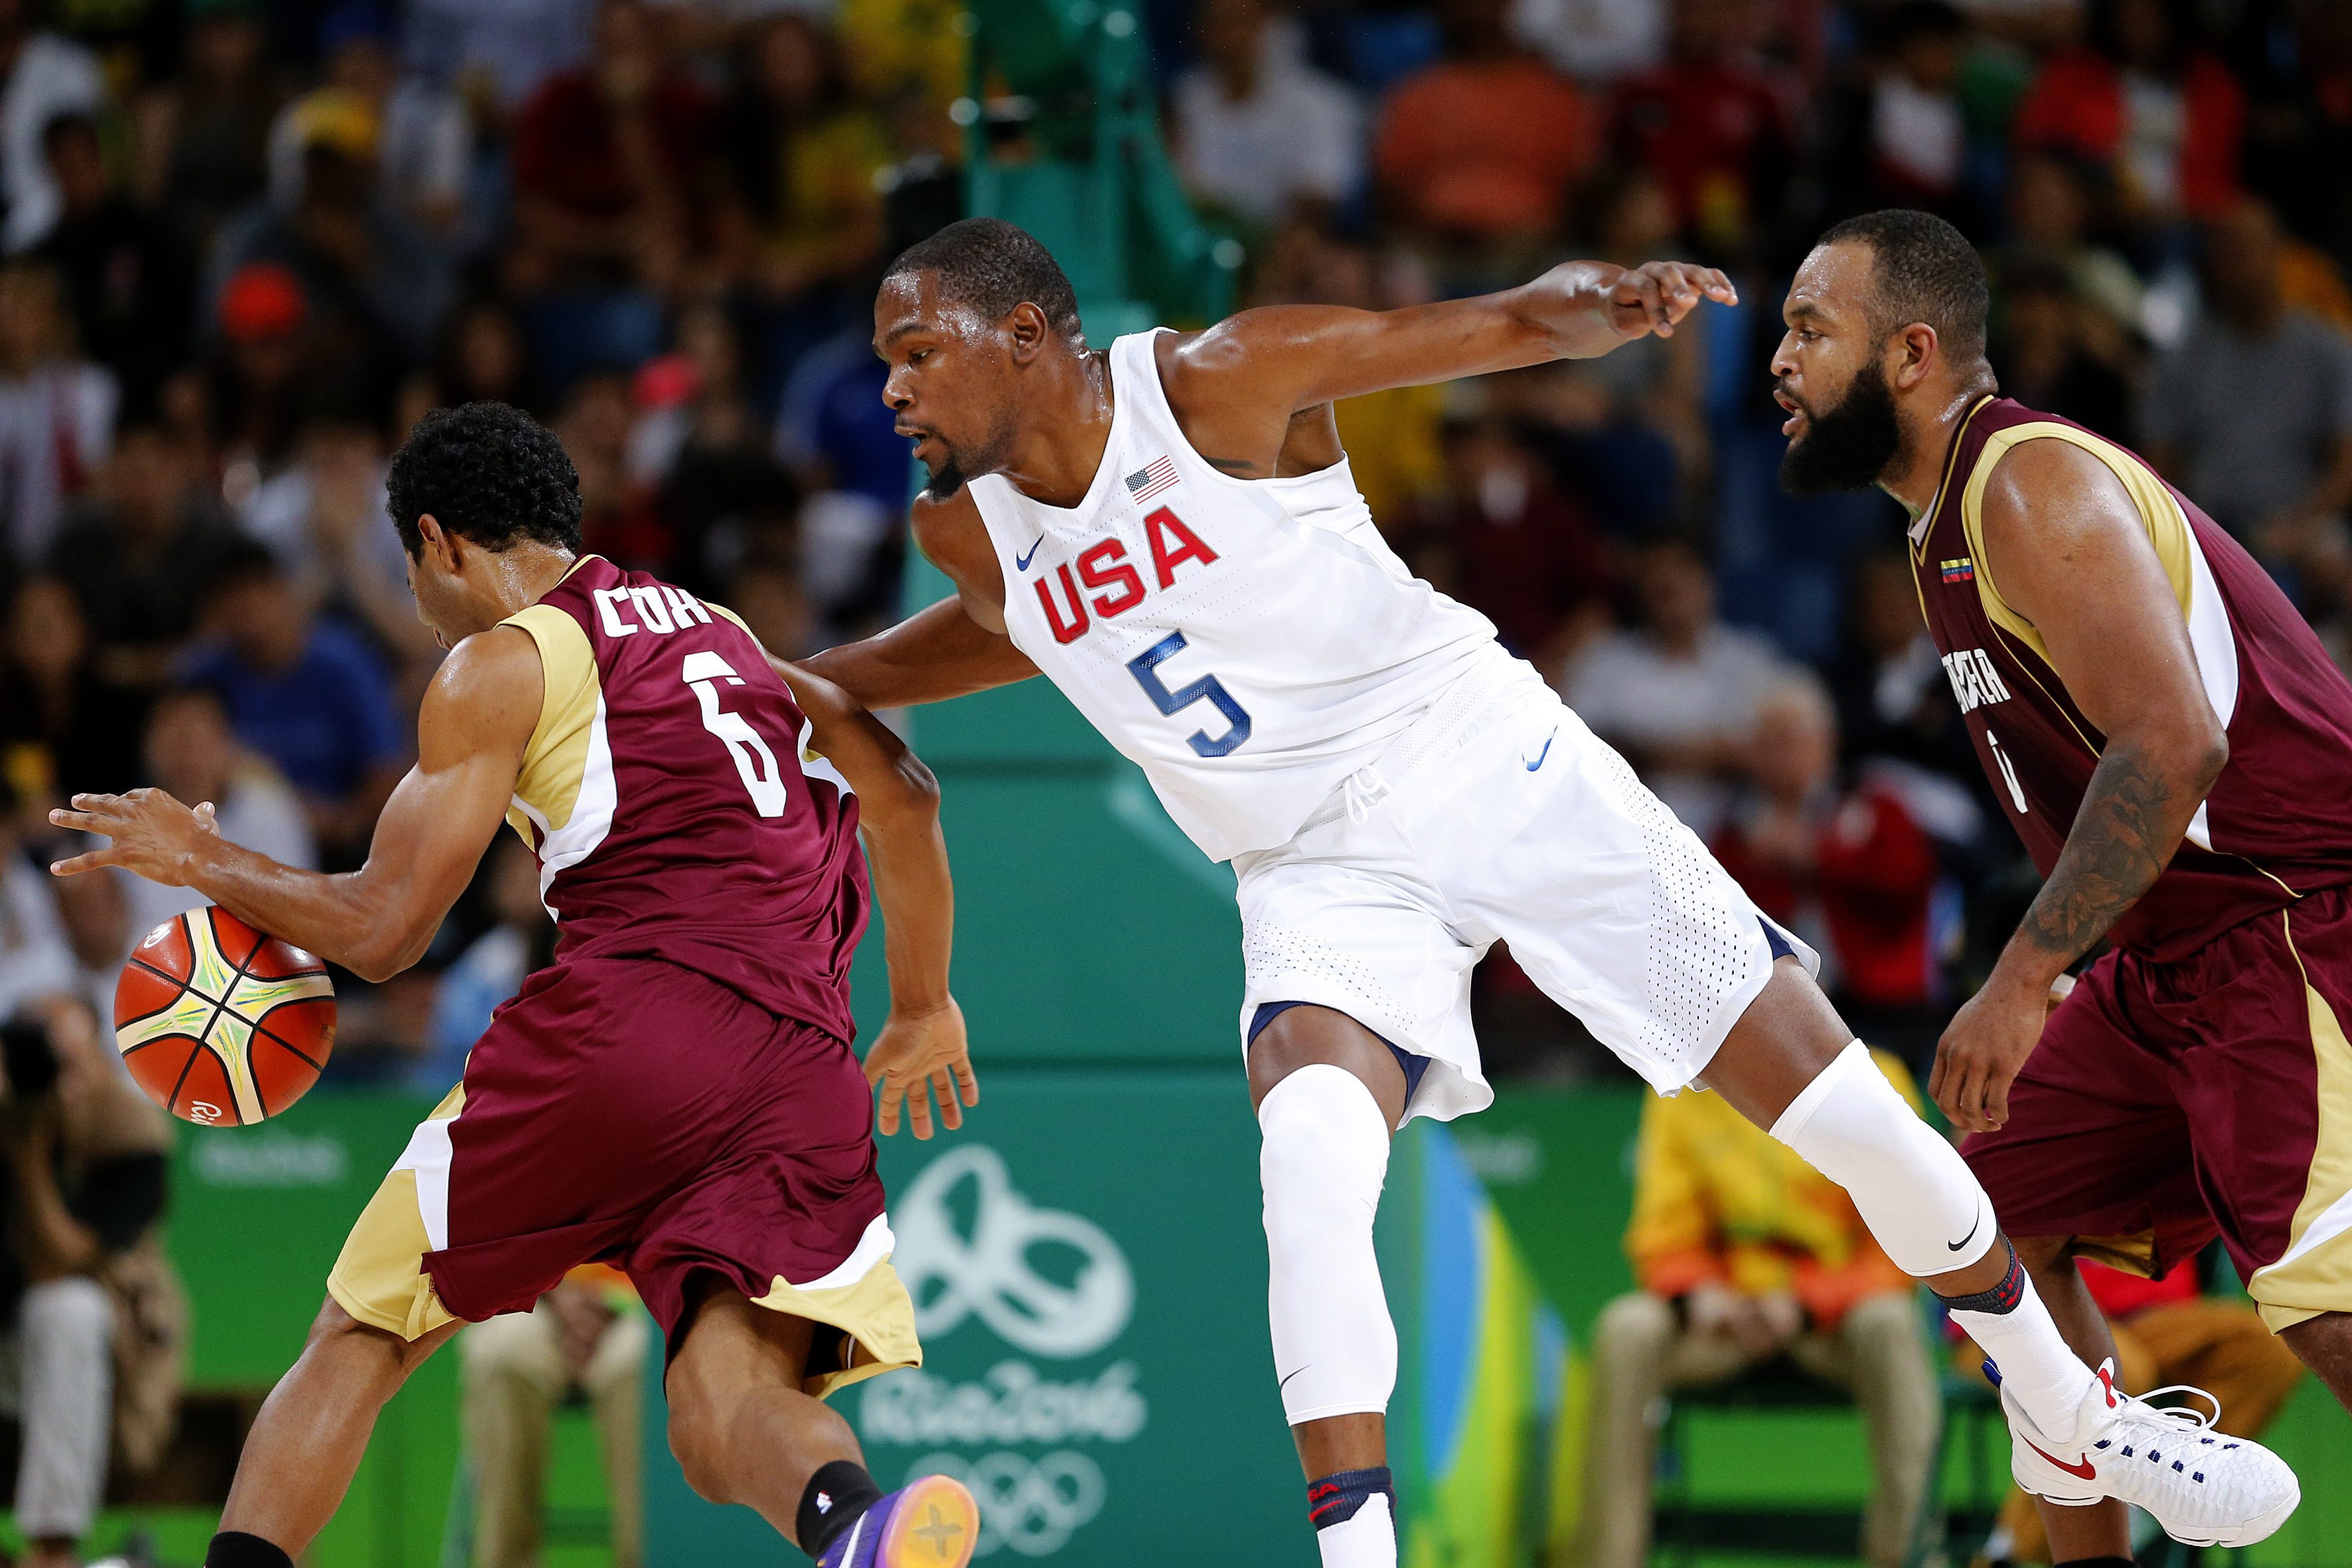 El jugador estadounidense Kevin Durant (c) en acción ante John Cox (i) durante el juego de baloncesto en el marco de los Juegos Olímpicos Río 2016. EFE